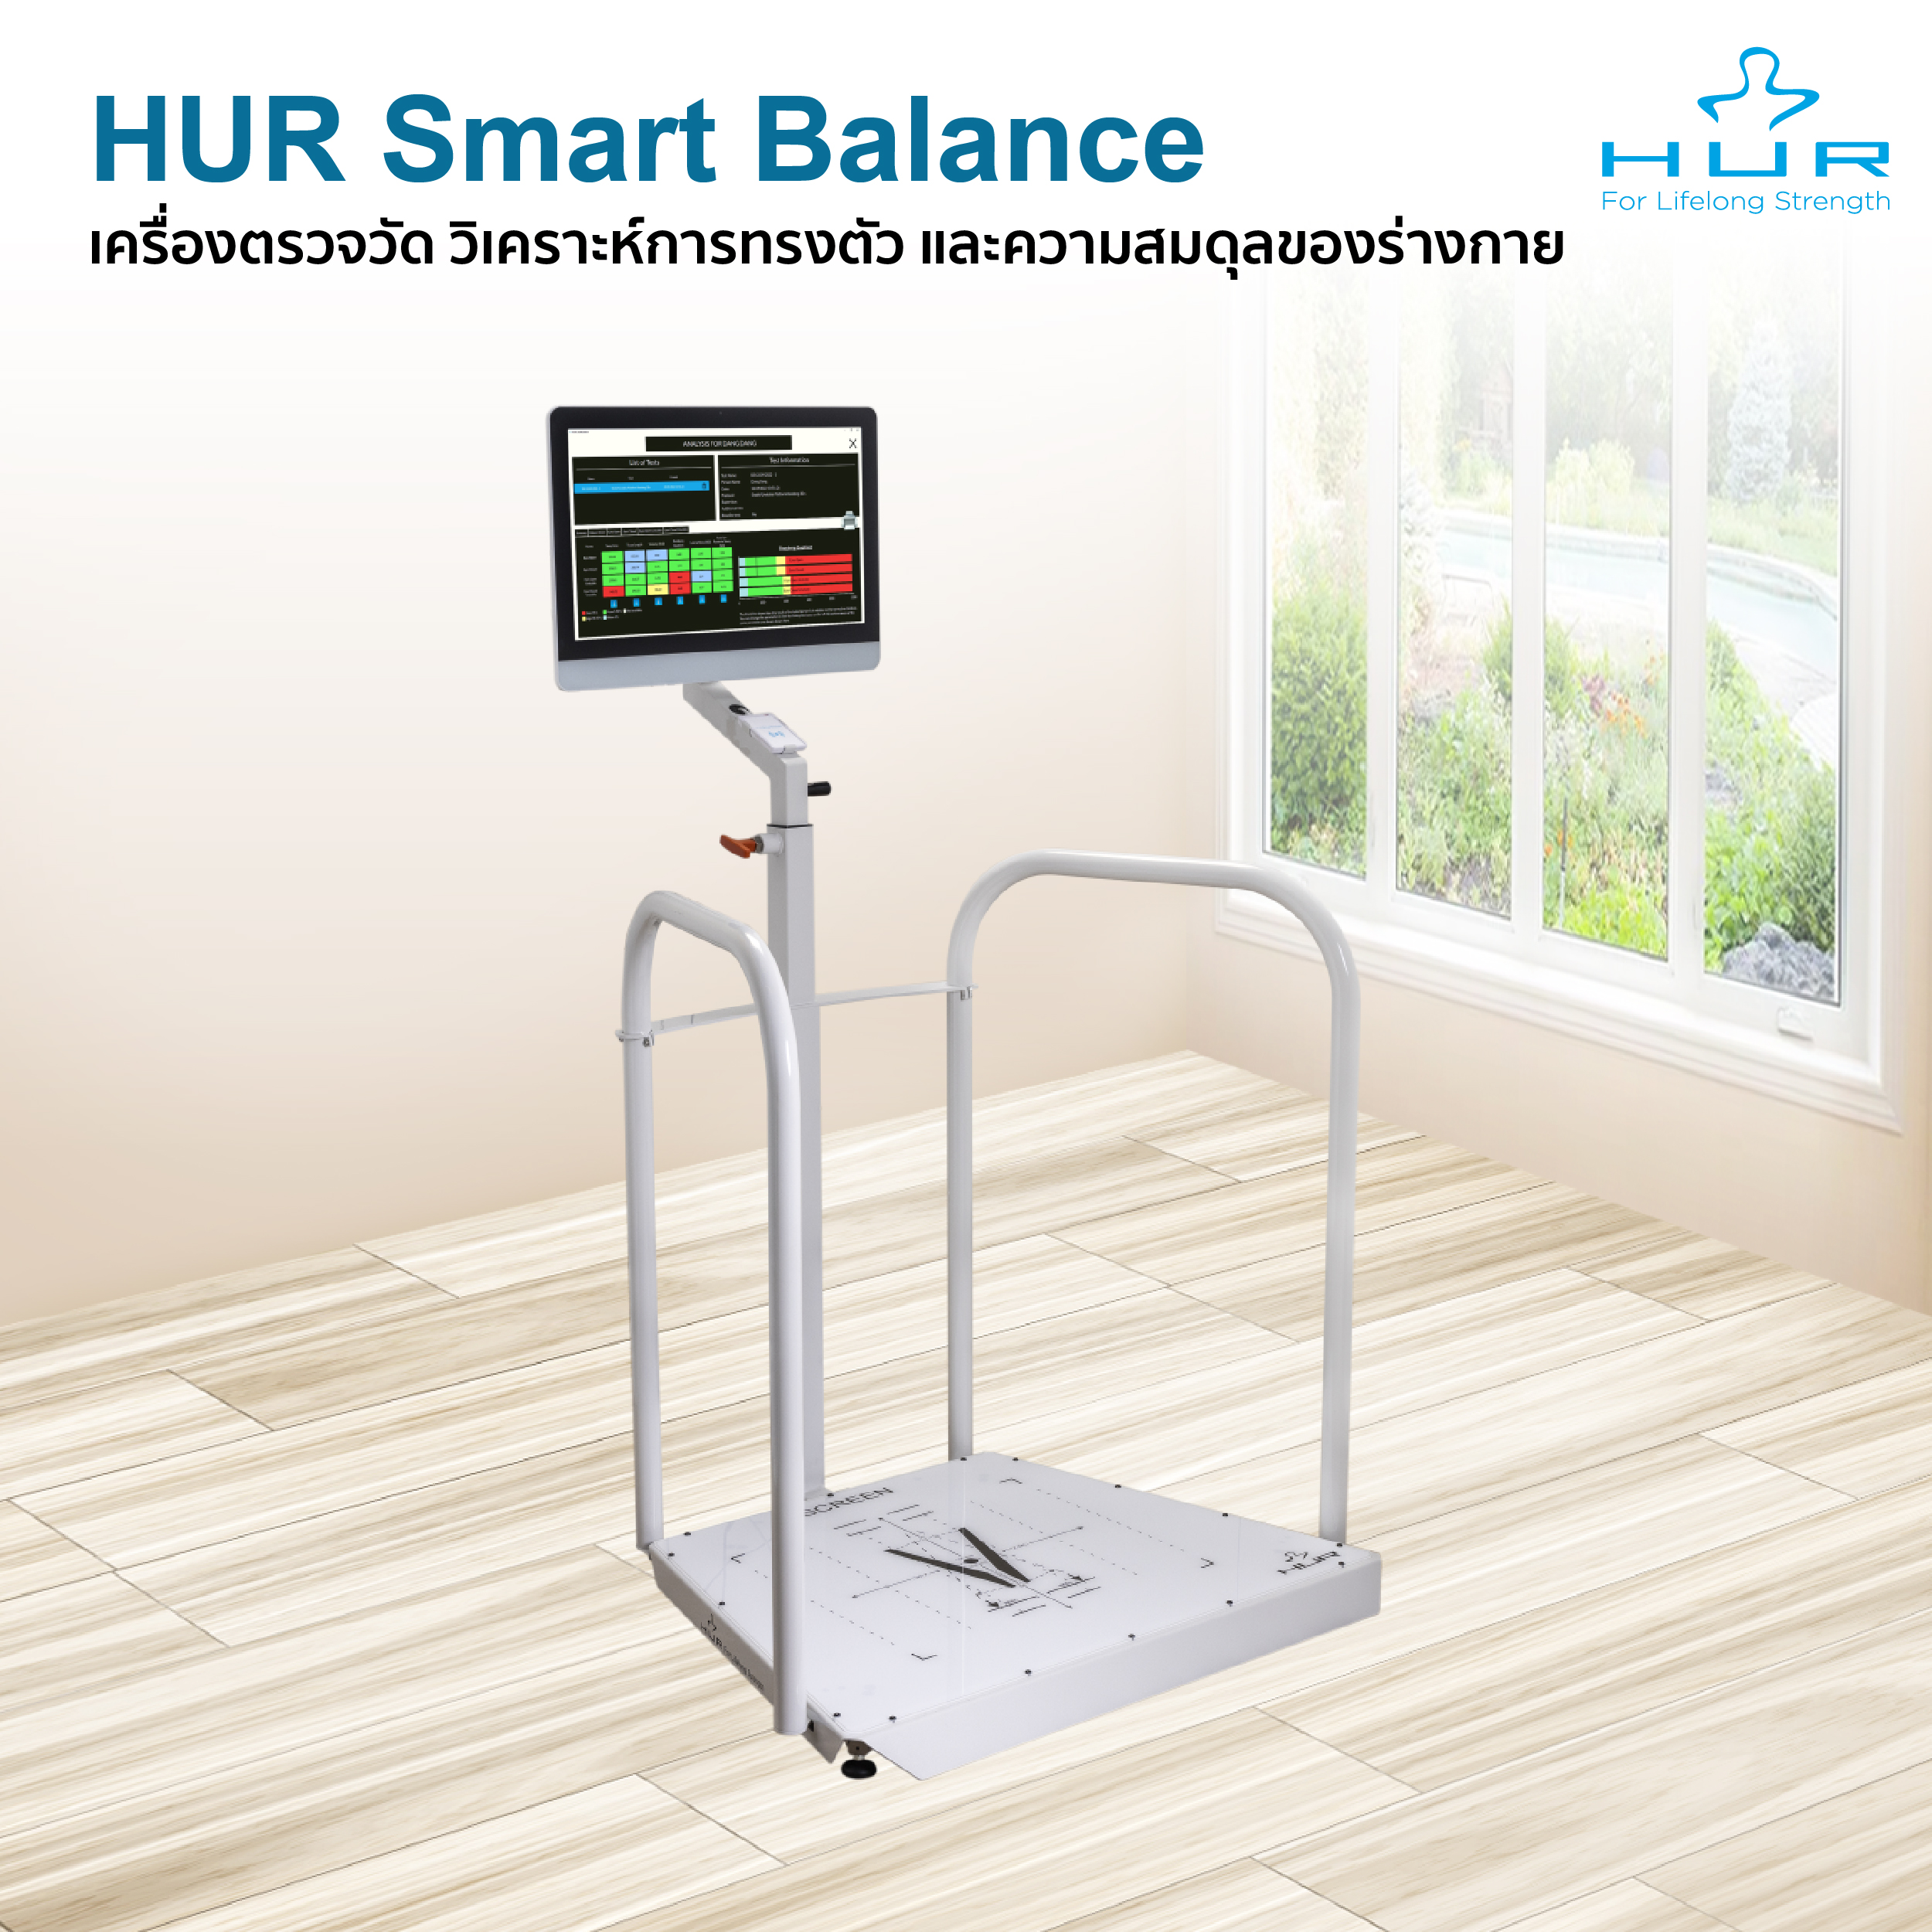 เครื่องตรวจวัด วิเคราะห์และฝึกความสมดุลของร่างกาย หรือการทรงตัว HUR Smart Balance